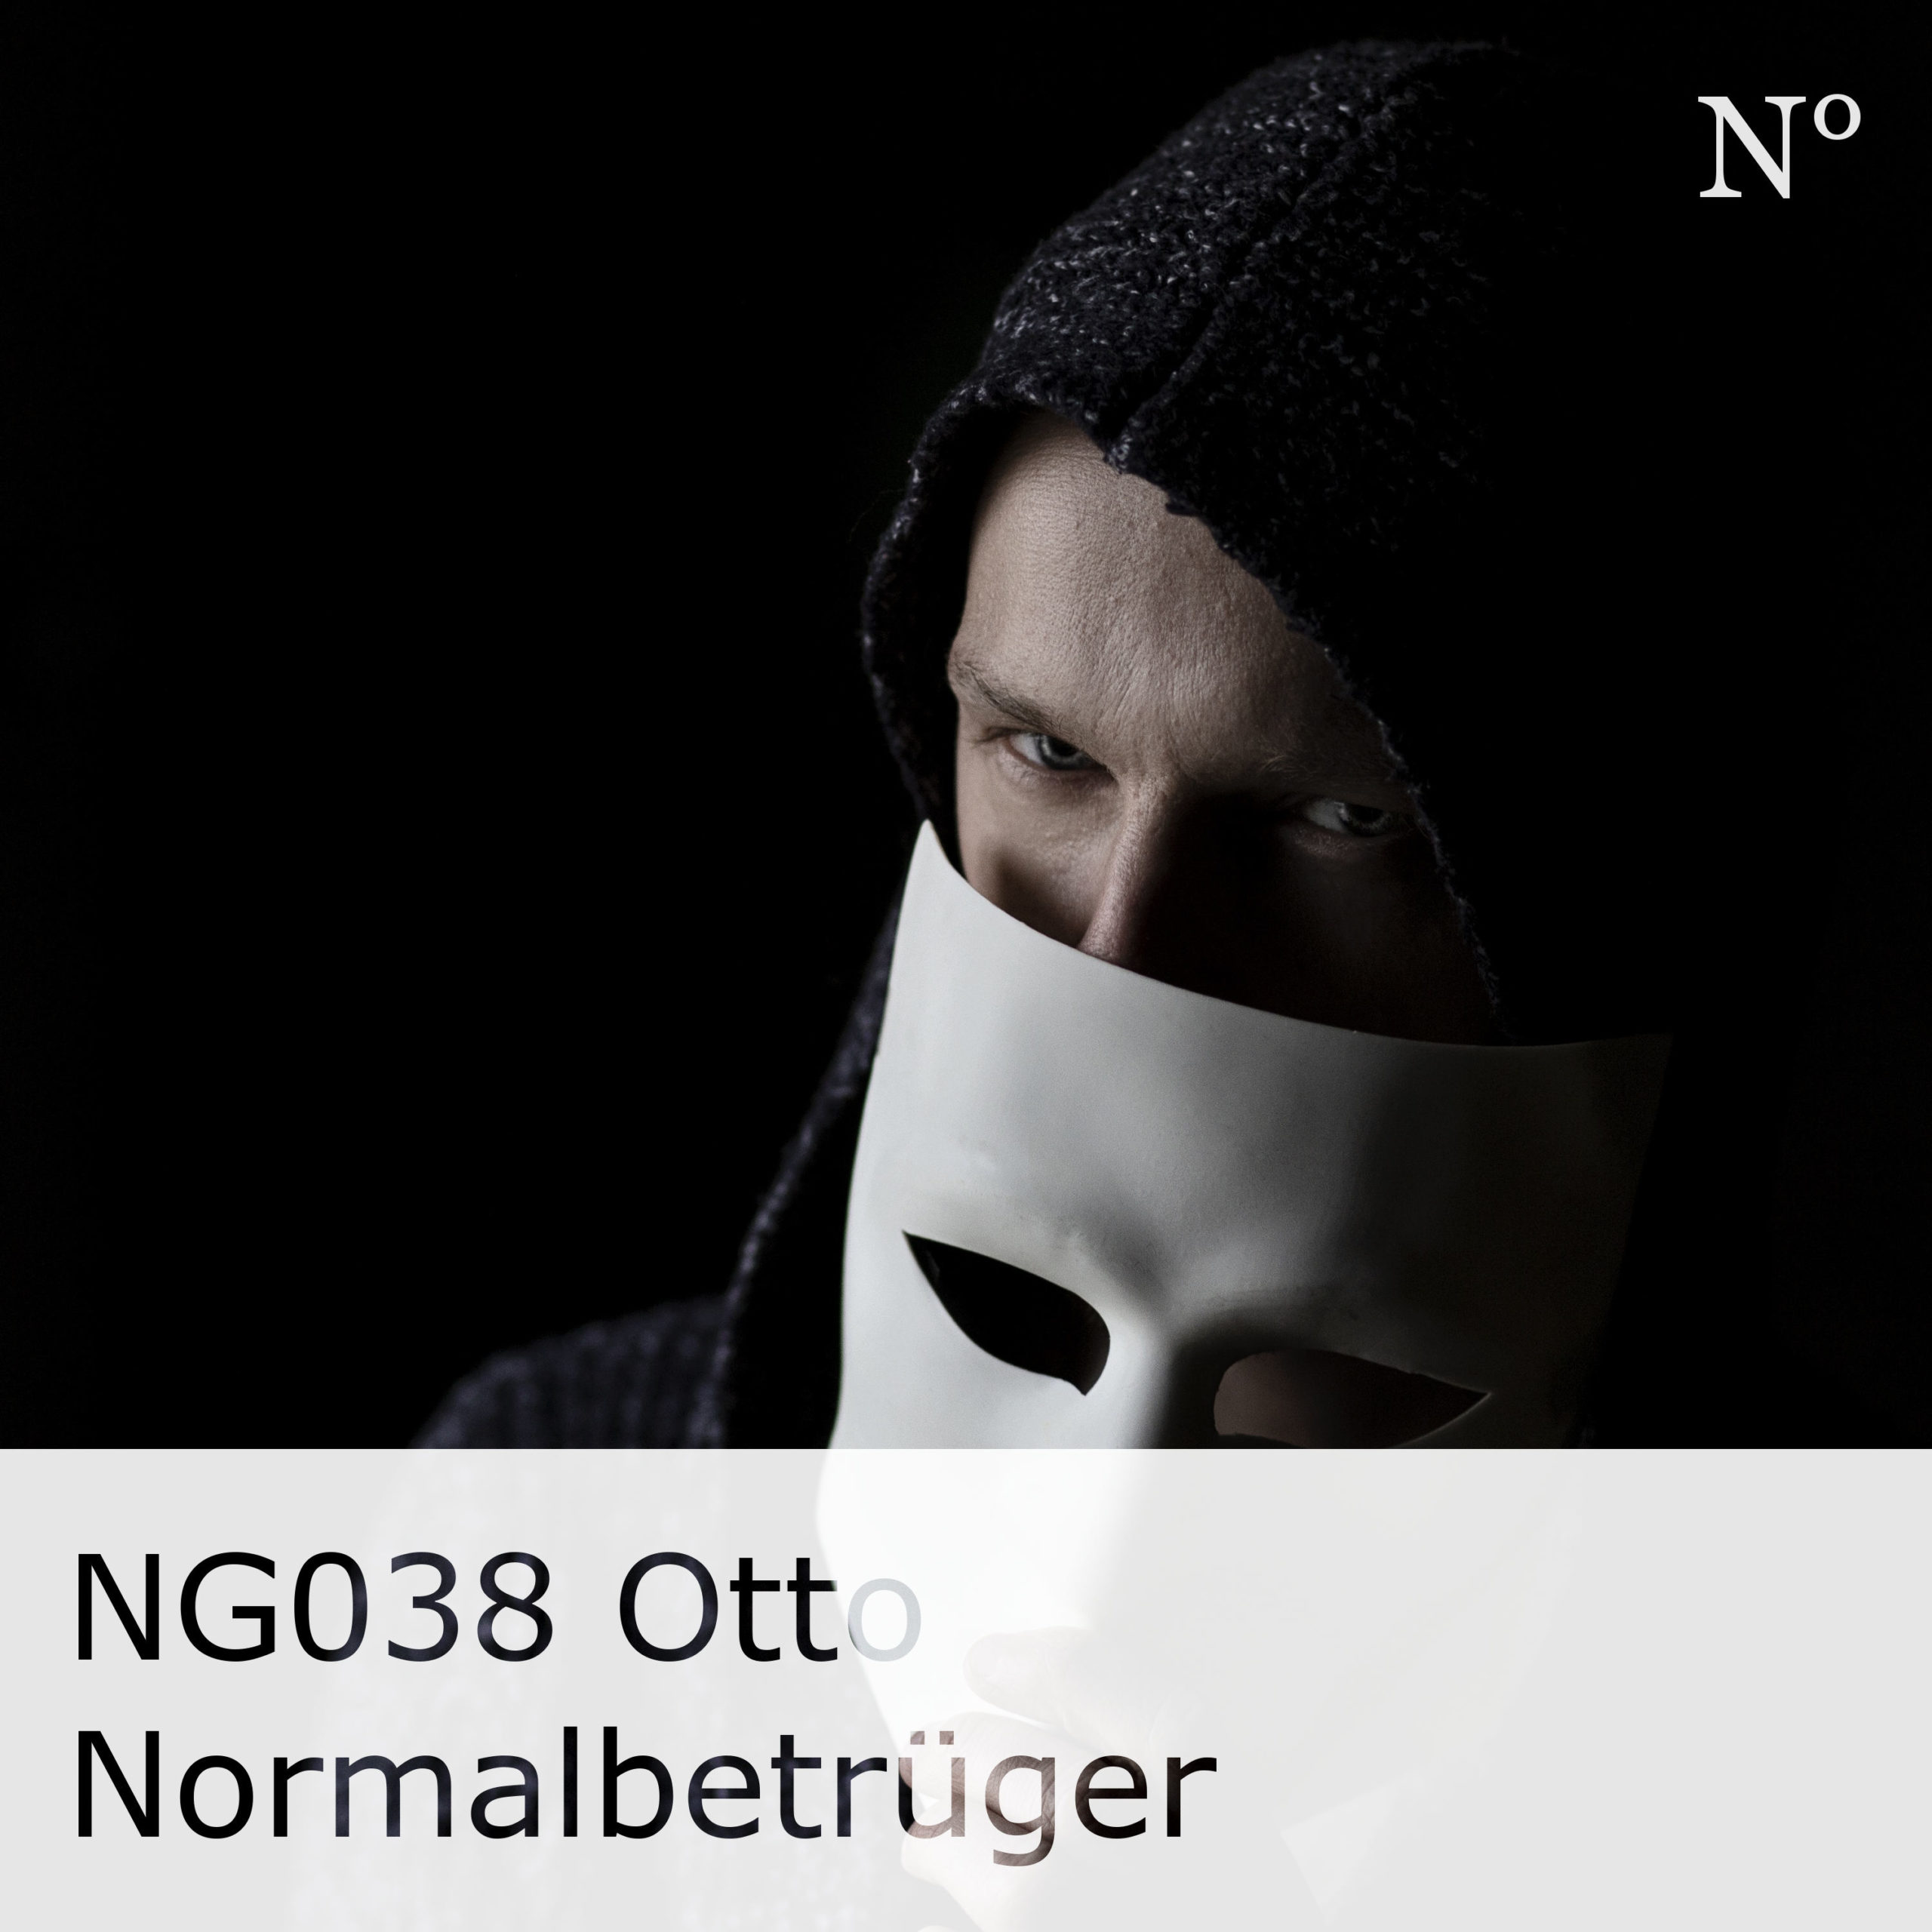 NG038 Otto Normalbetrüger